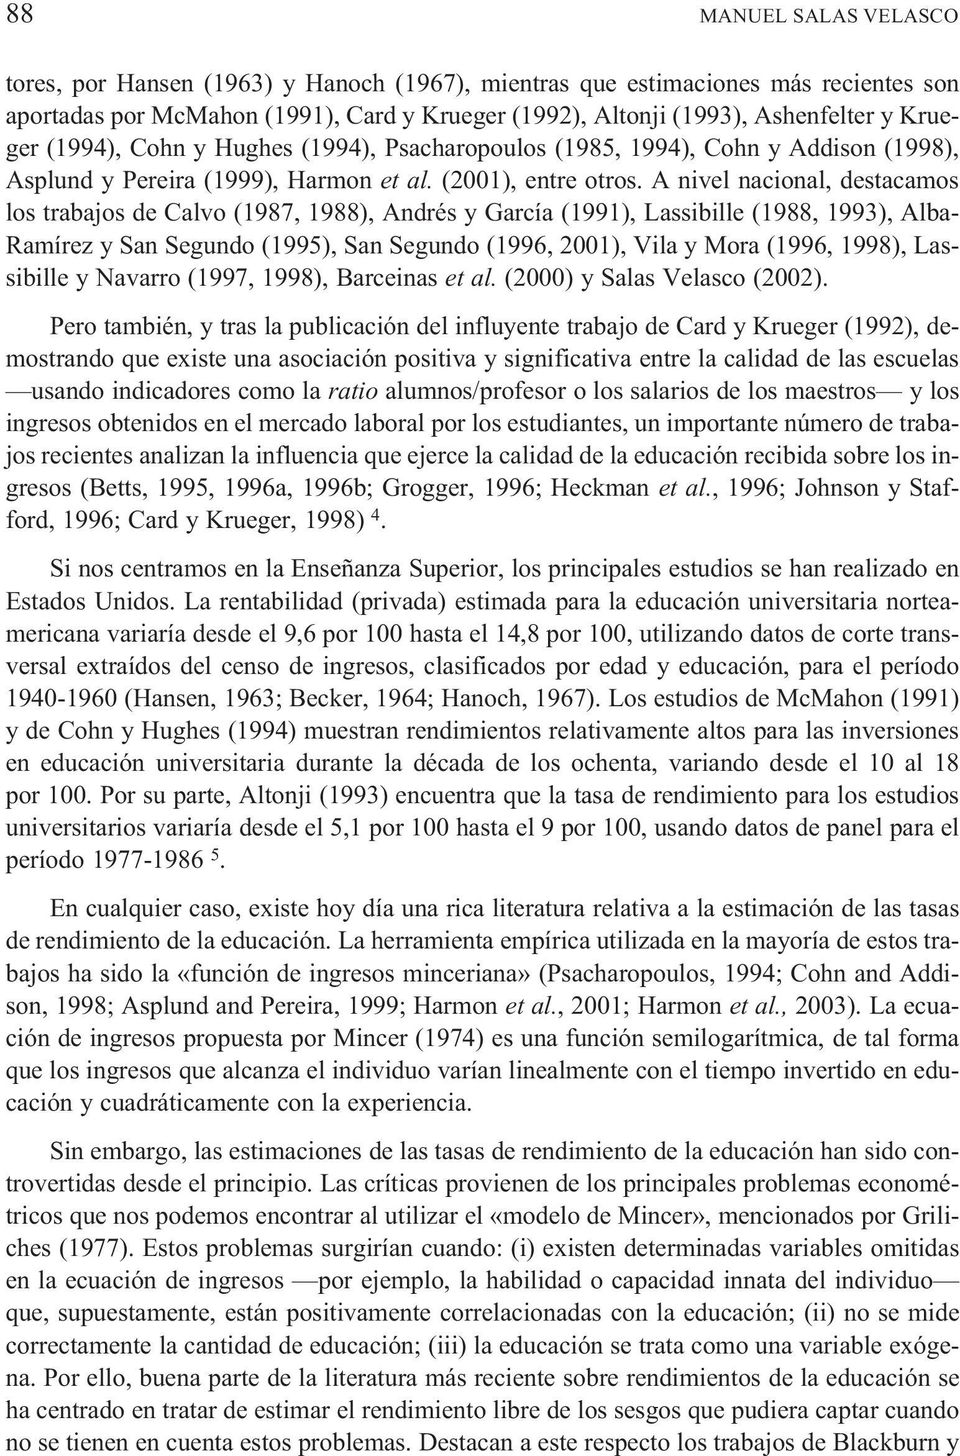 A nivel nacional, destacamos los trabajos de Calvo (1987, 1988), Andrés y García (1991), Lassibille (1988, 1993), Alba- Ramírez y San Segundo (1995), San Segundo (1996, 2001), Vila y Mora (1996,